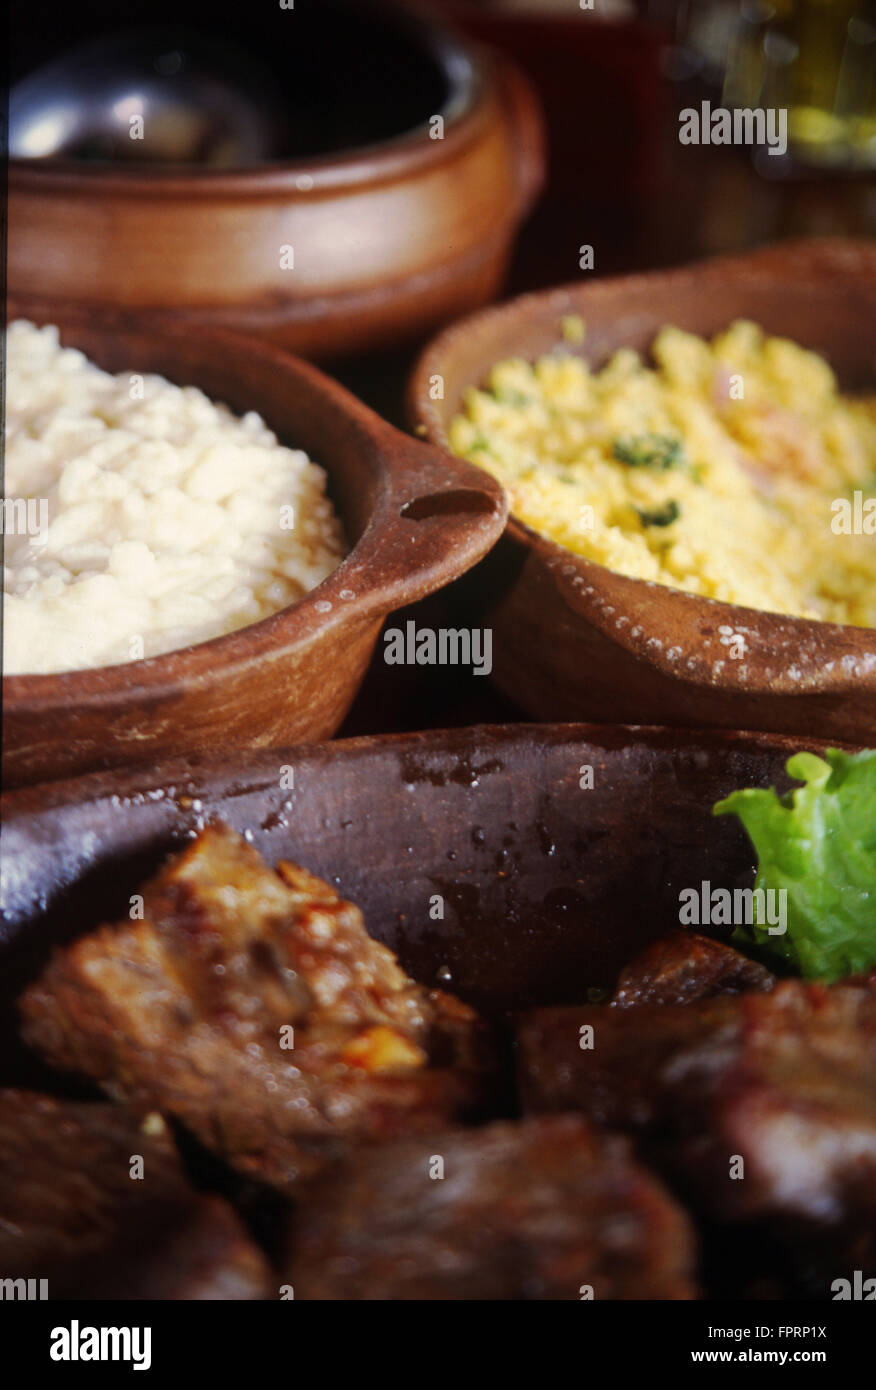 La nourriture brésilienne, farofa, rôti de boeuf, de riz et d'un assortiment de plats internationaux Banque D'Images